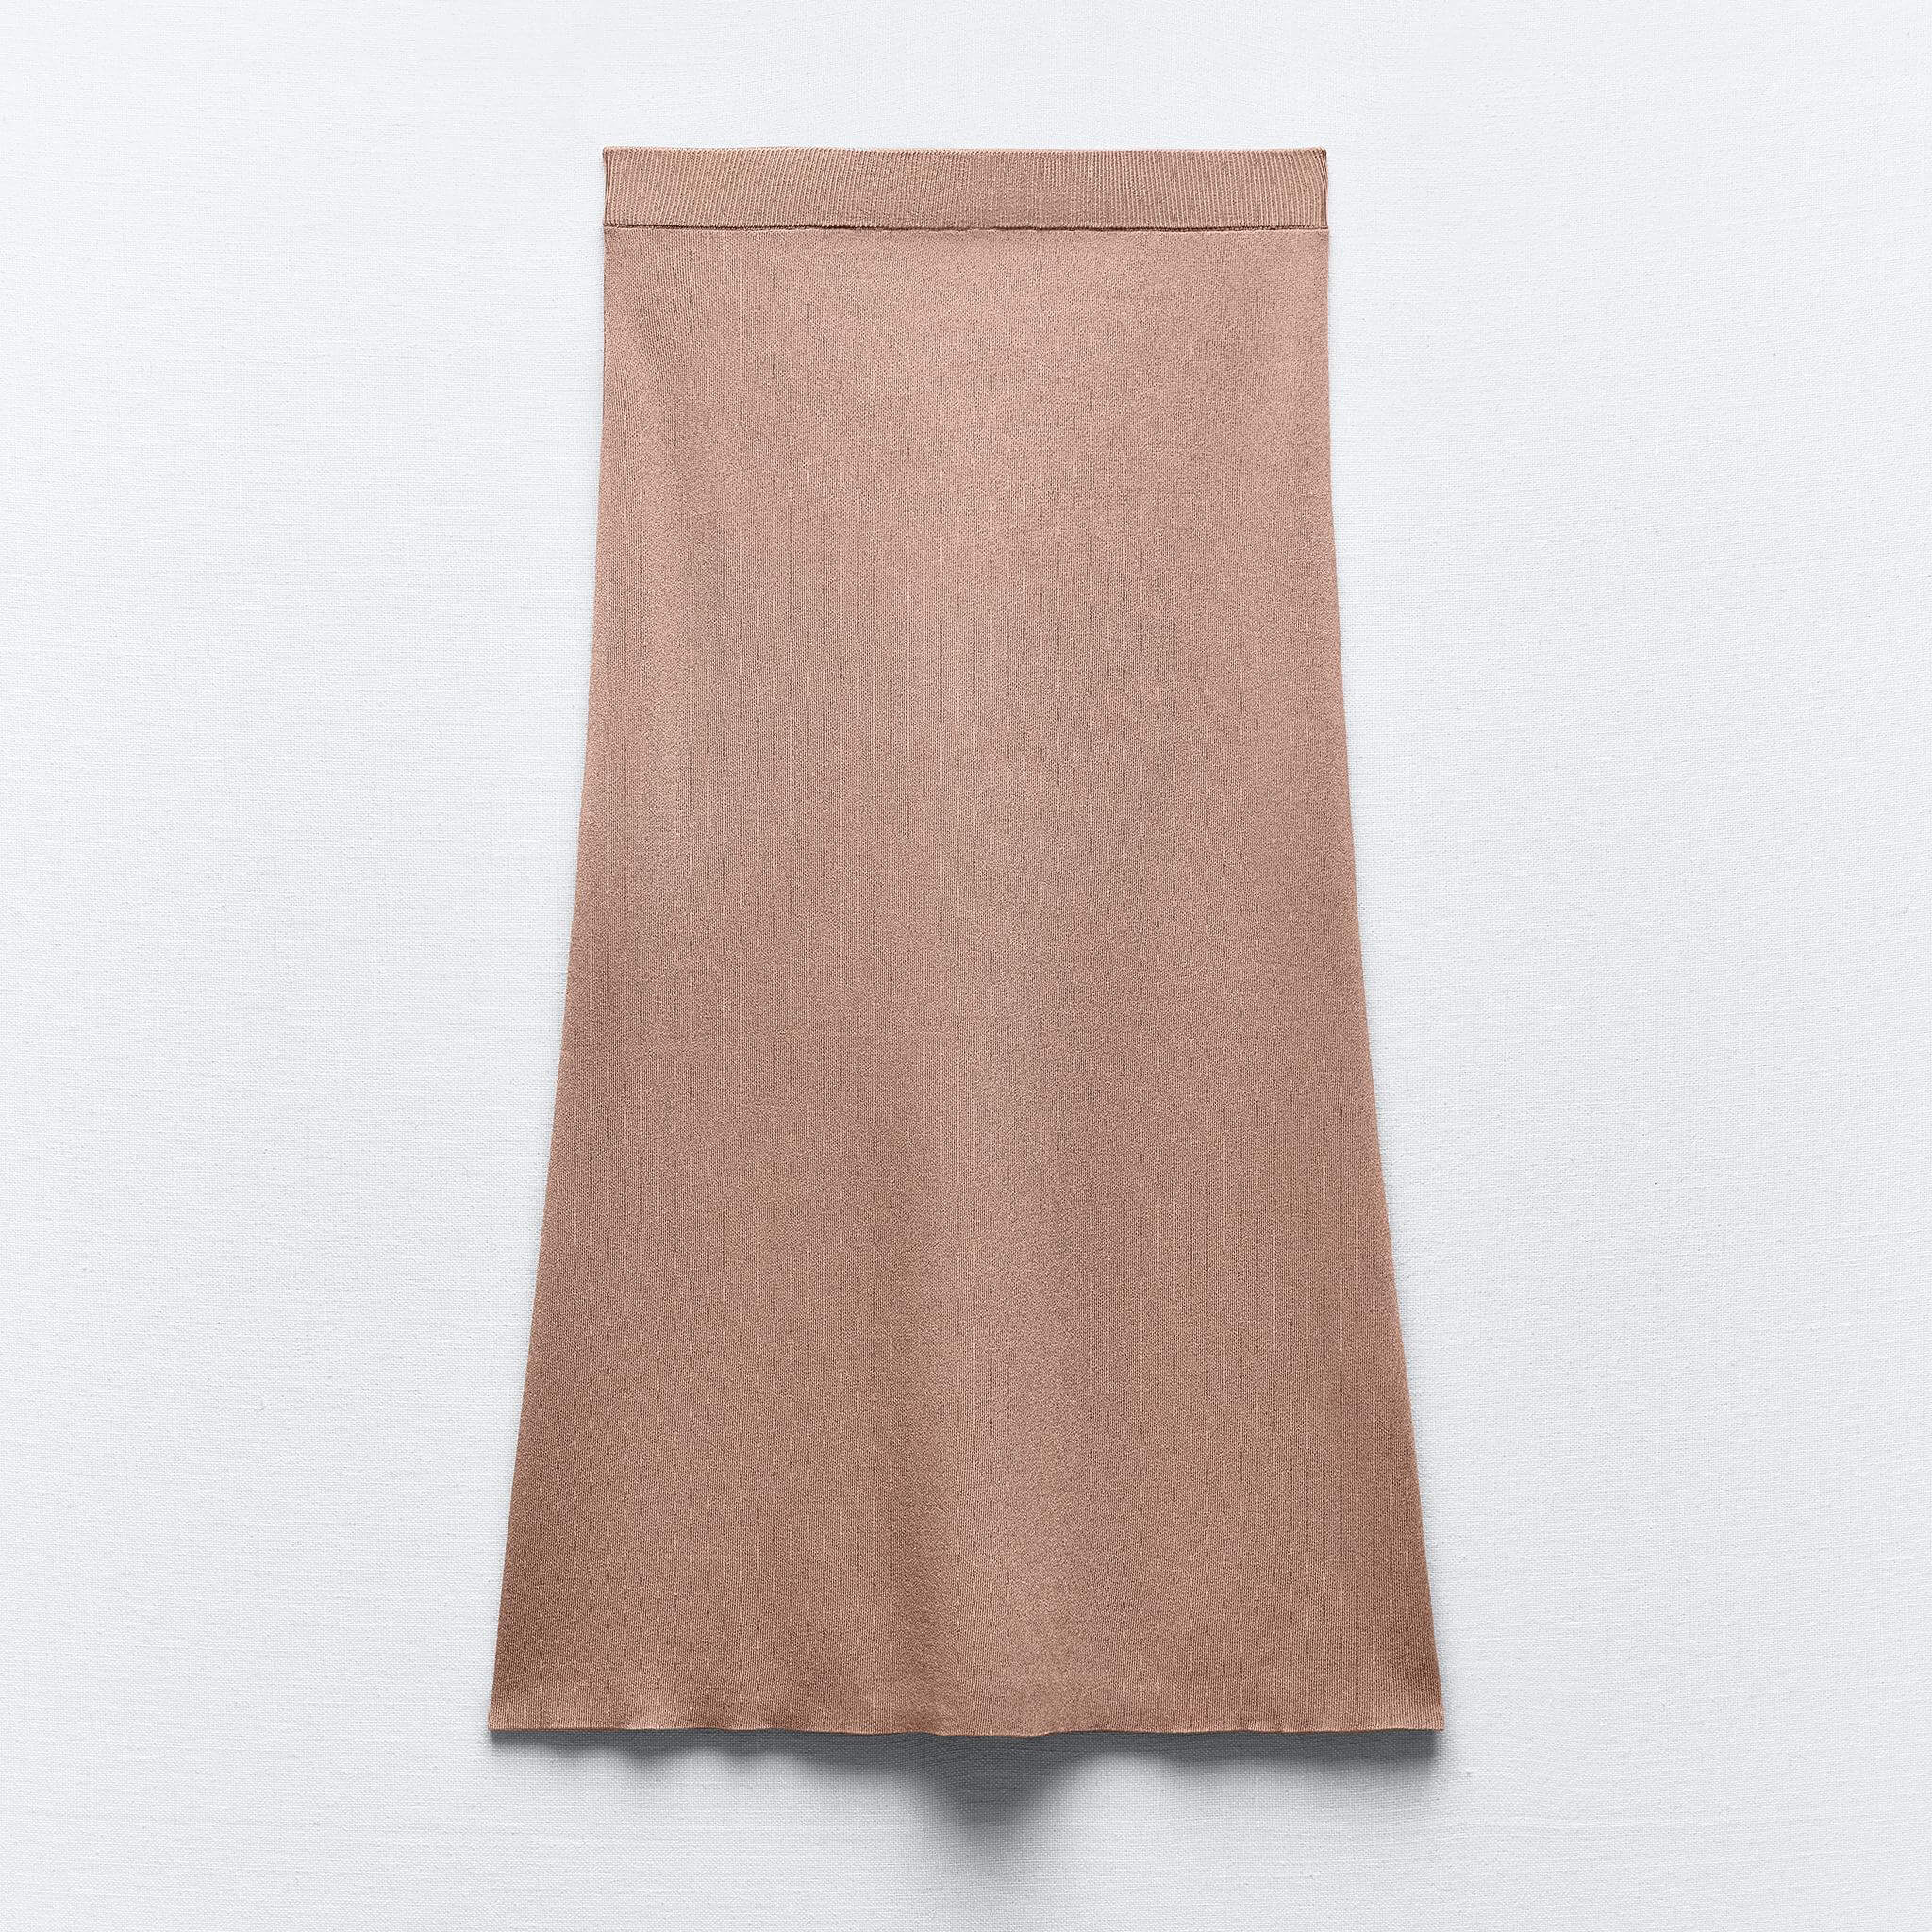 Юбка Zara Knit Midi Pencil, бежевый юбка карандаш женская трикотажная средней длины с завышенной талией